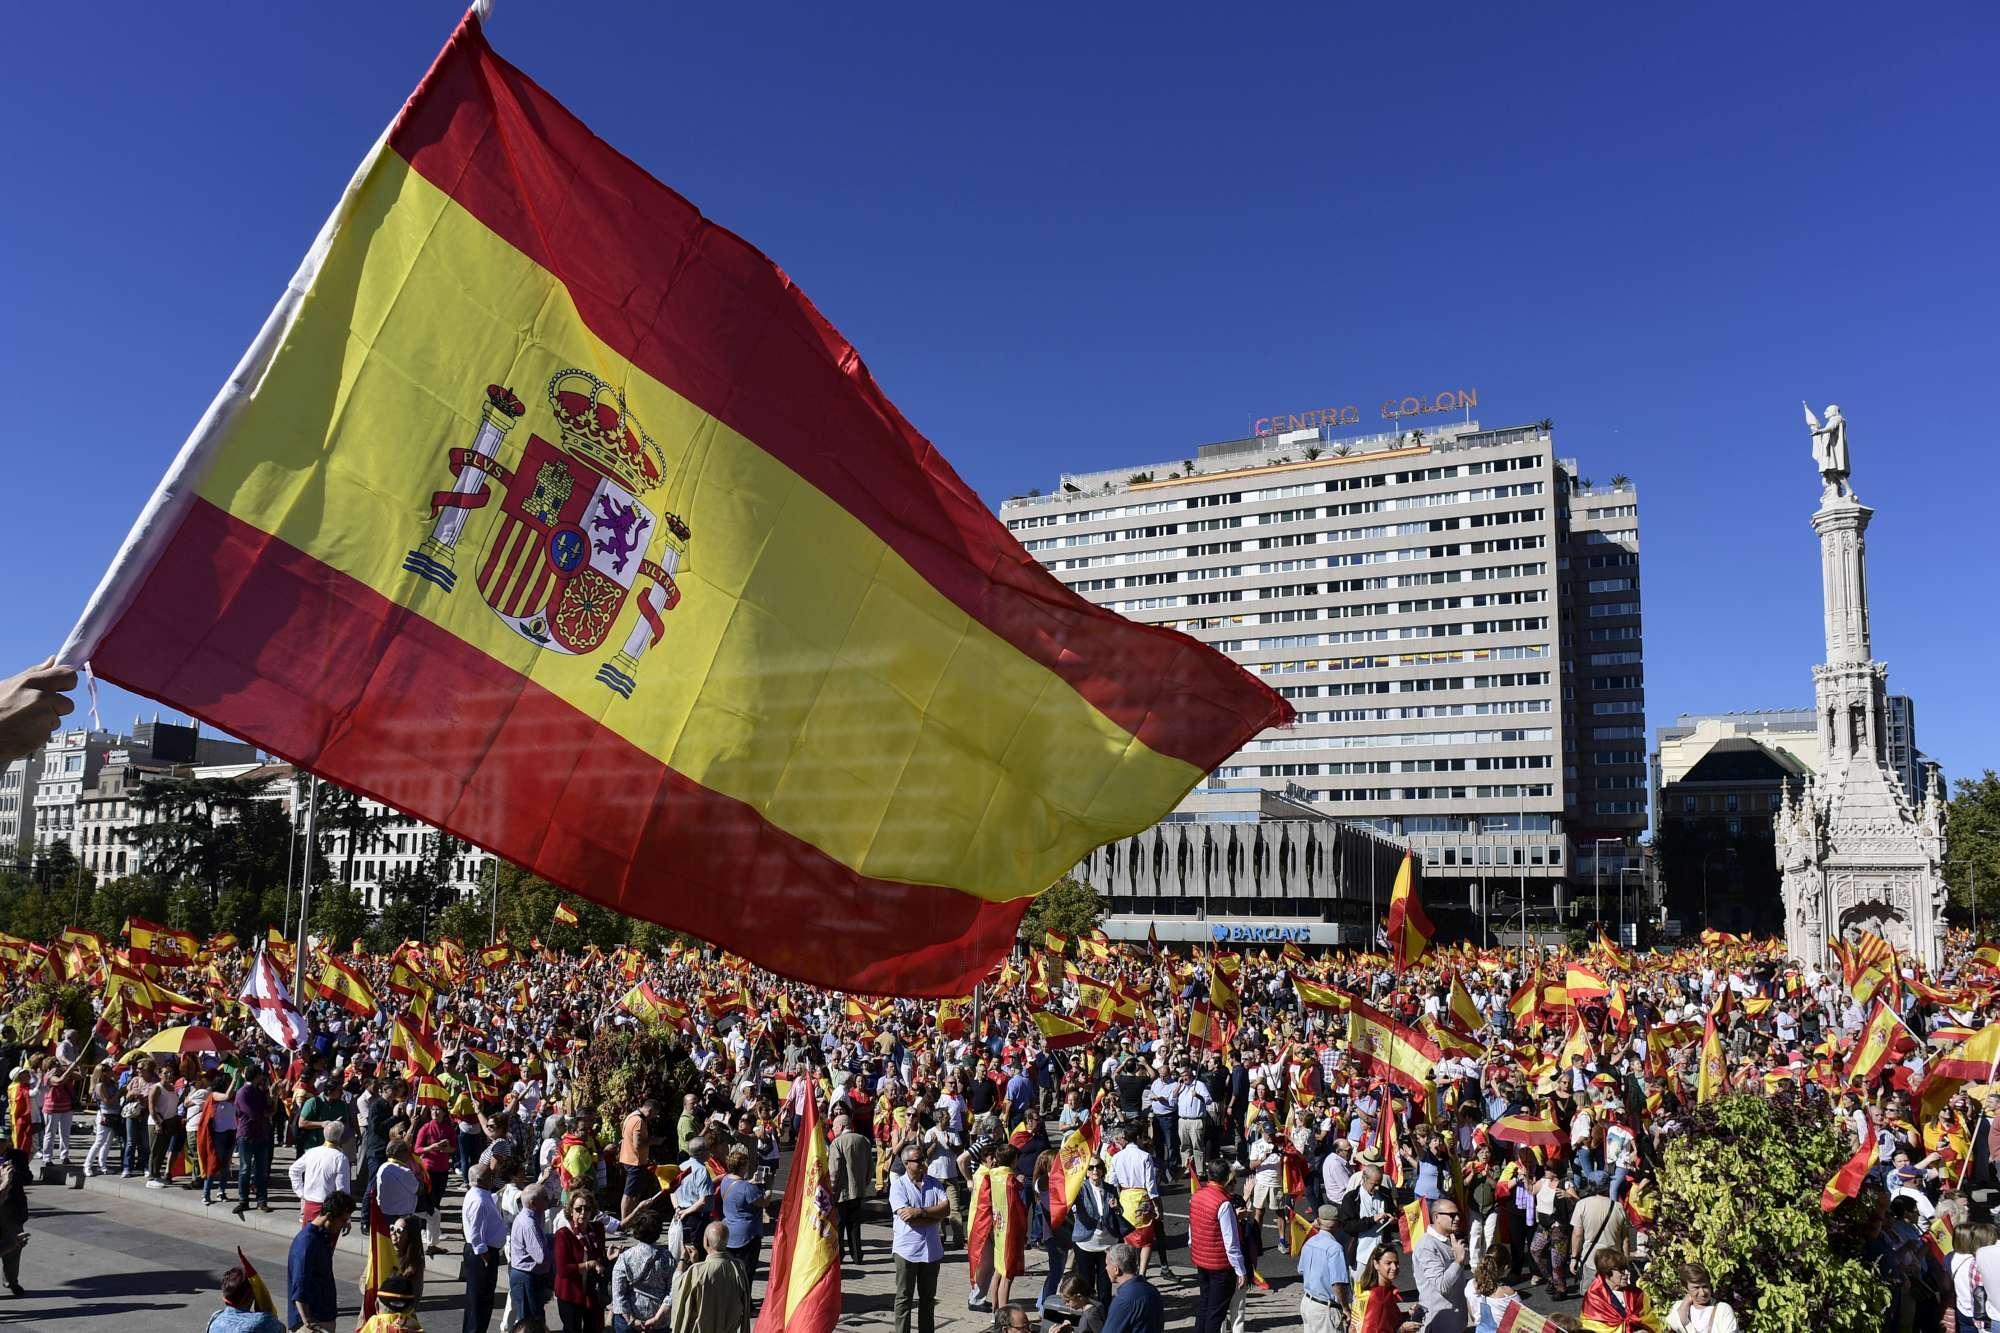 Відділення Каталонії: у Мадриді тисячі людей вийшли захищати цілісність Іспанії